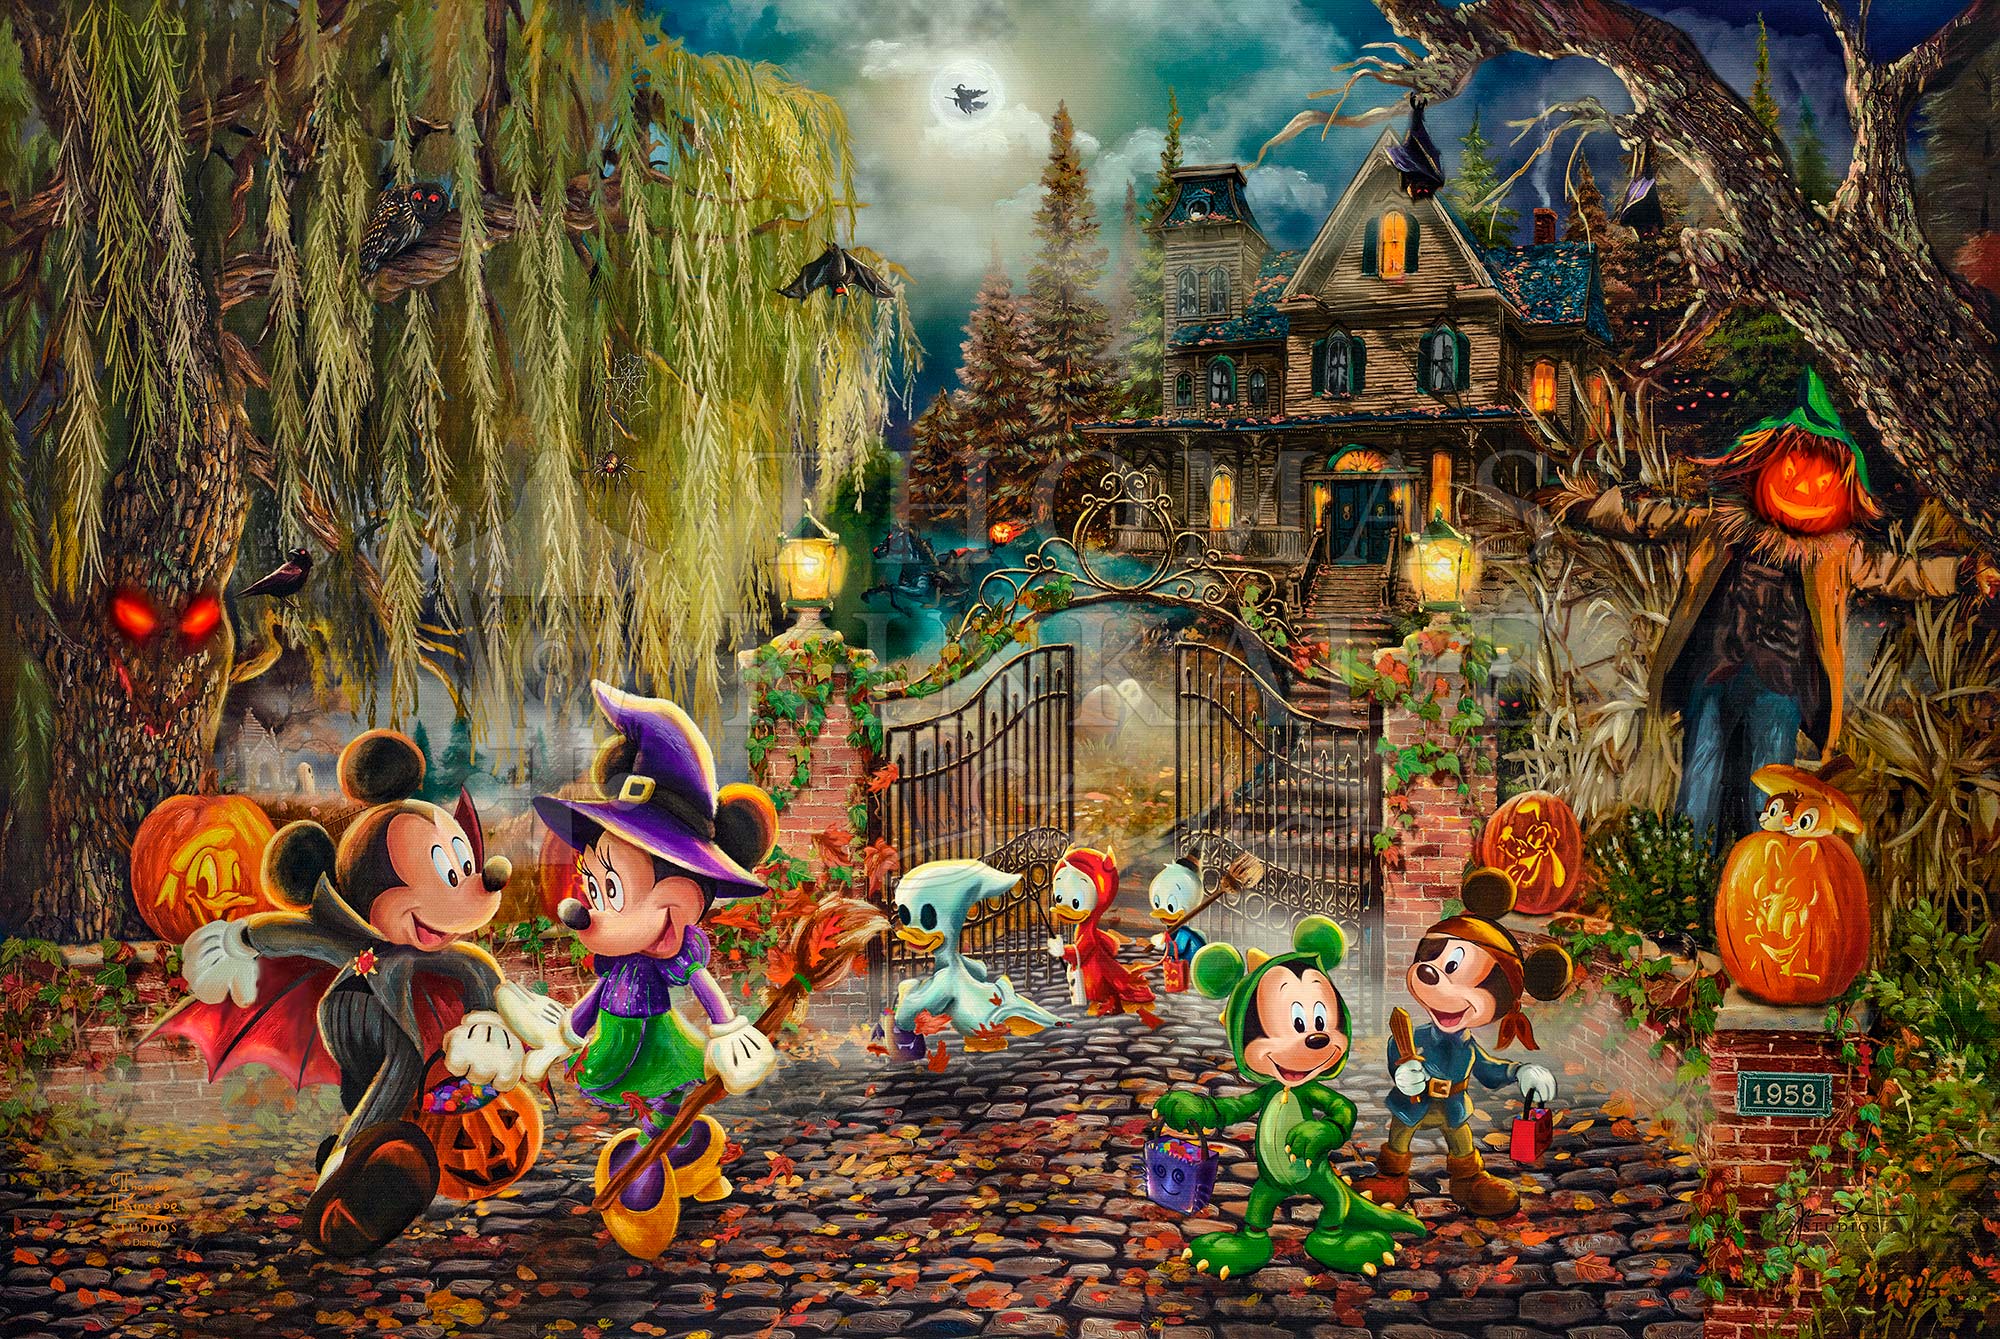 Thomas Kinkade Disney - Mickey and Minnie Sweetheart Campfire